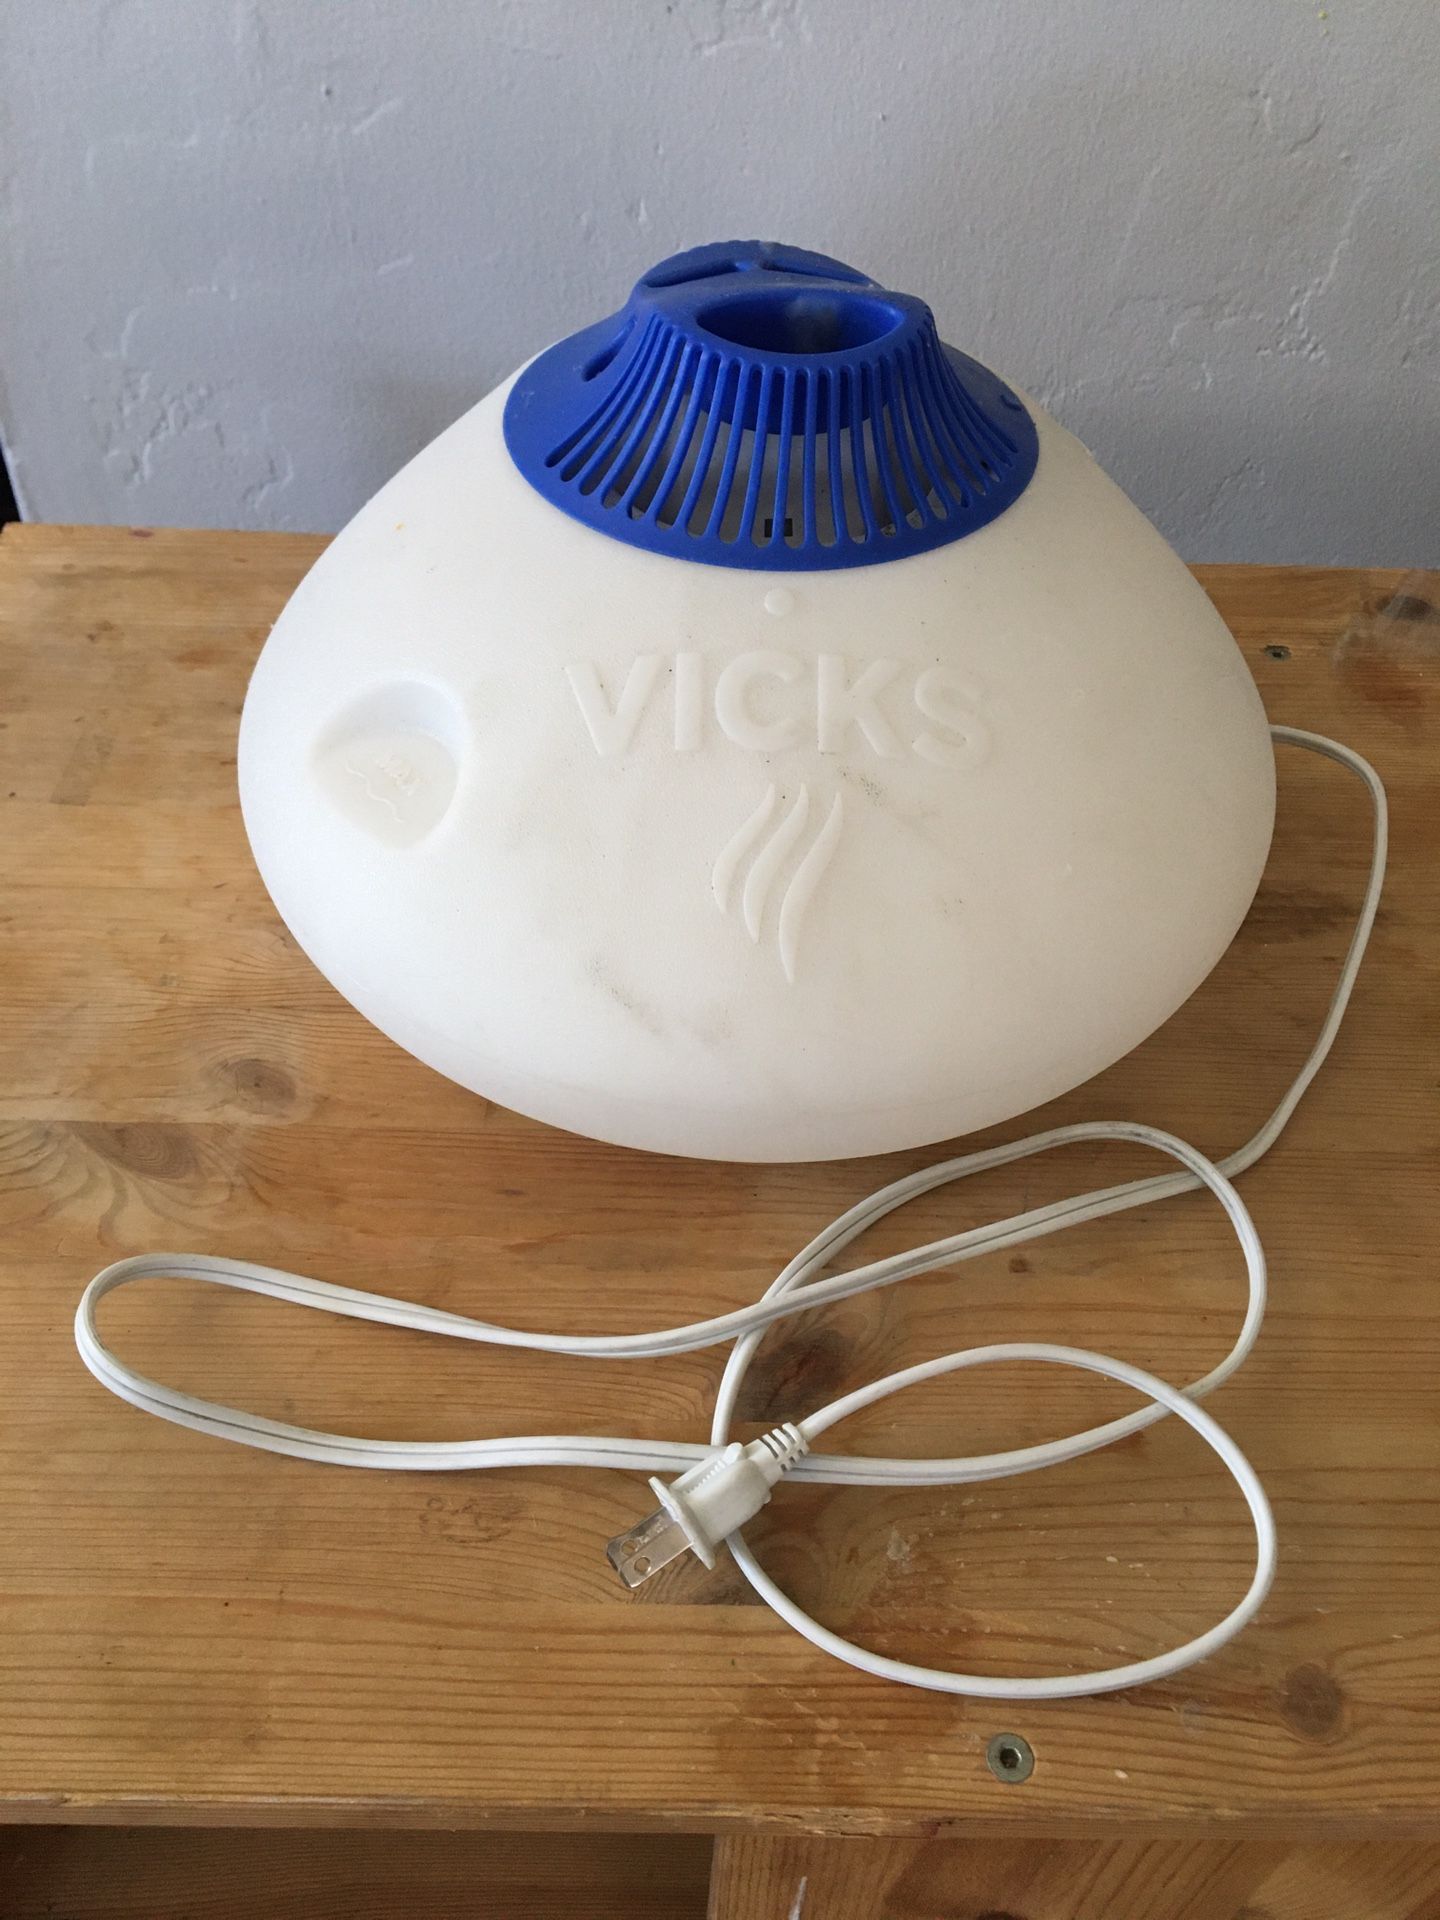 Vick’s Humidifier